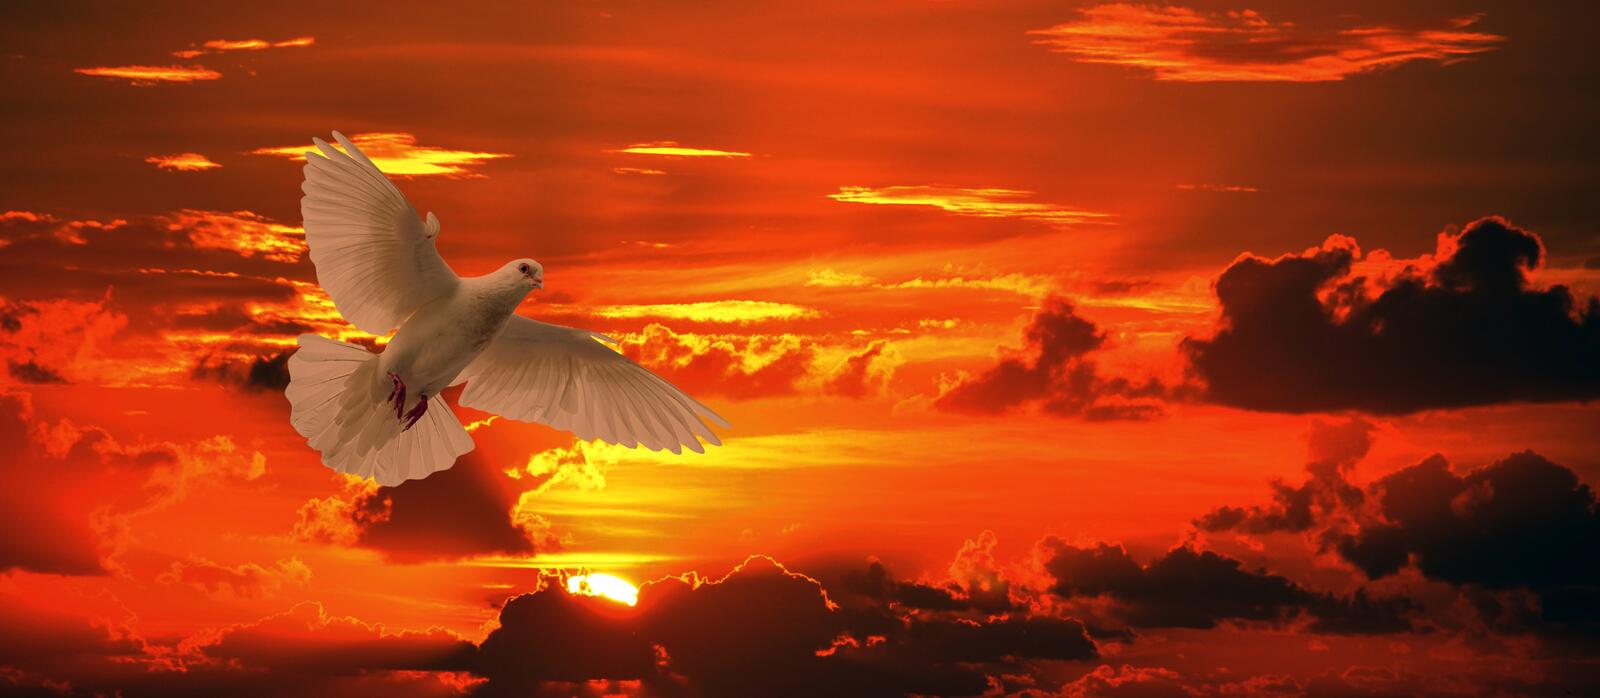 Wallpapers dove bird flying orange sunset on the desktop